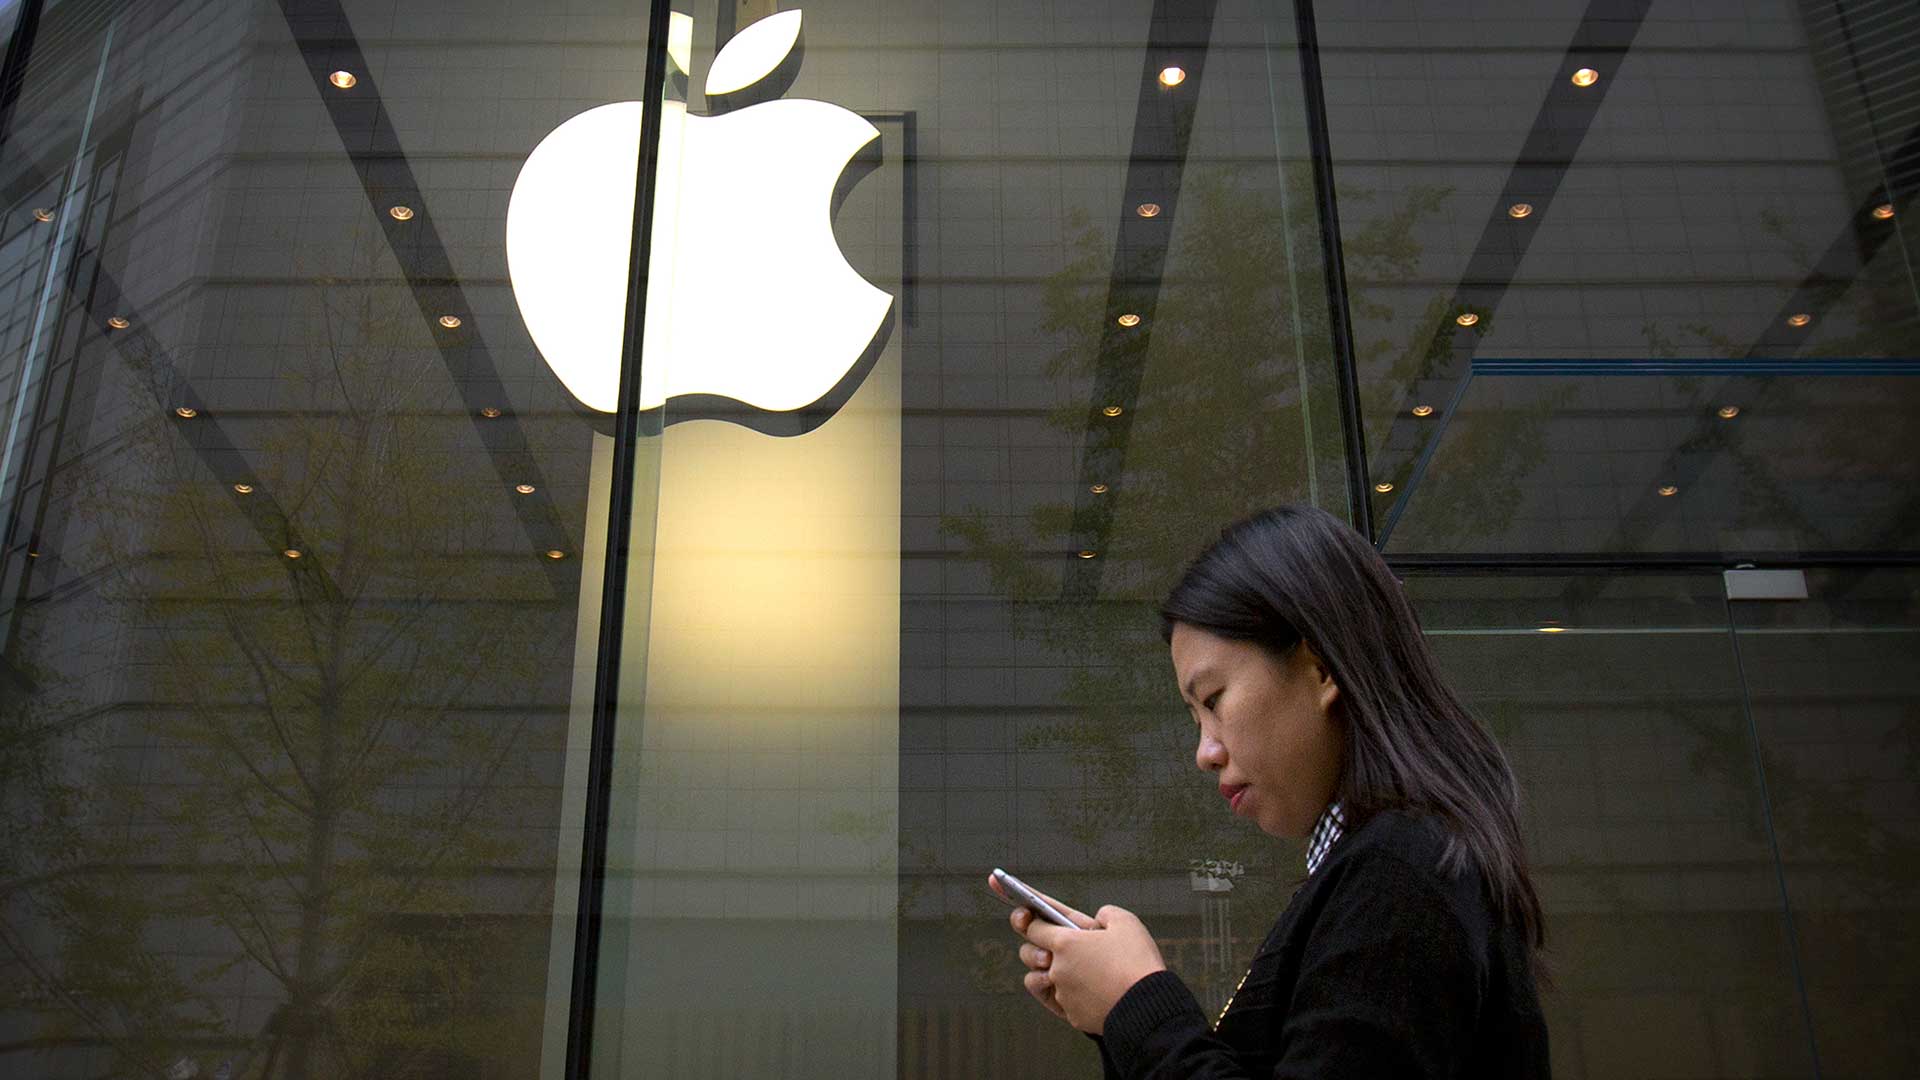 El acceso de China a iCloud genera preocupación sobre la privacidad